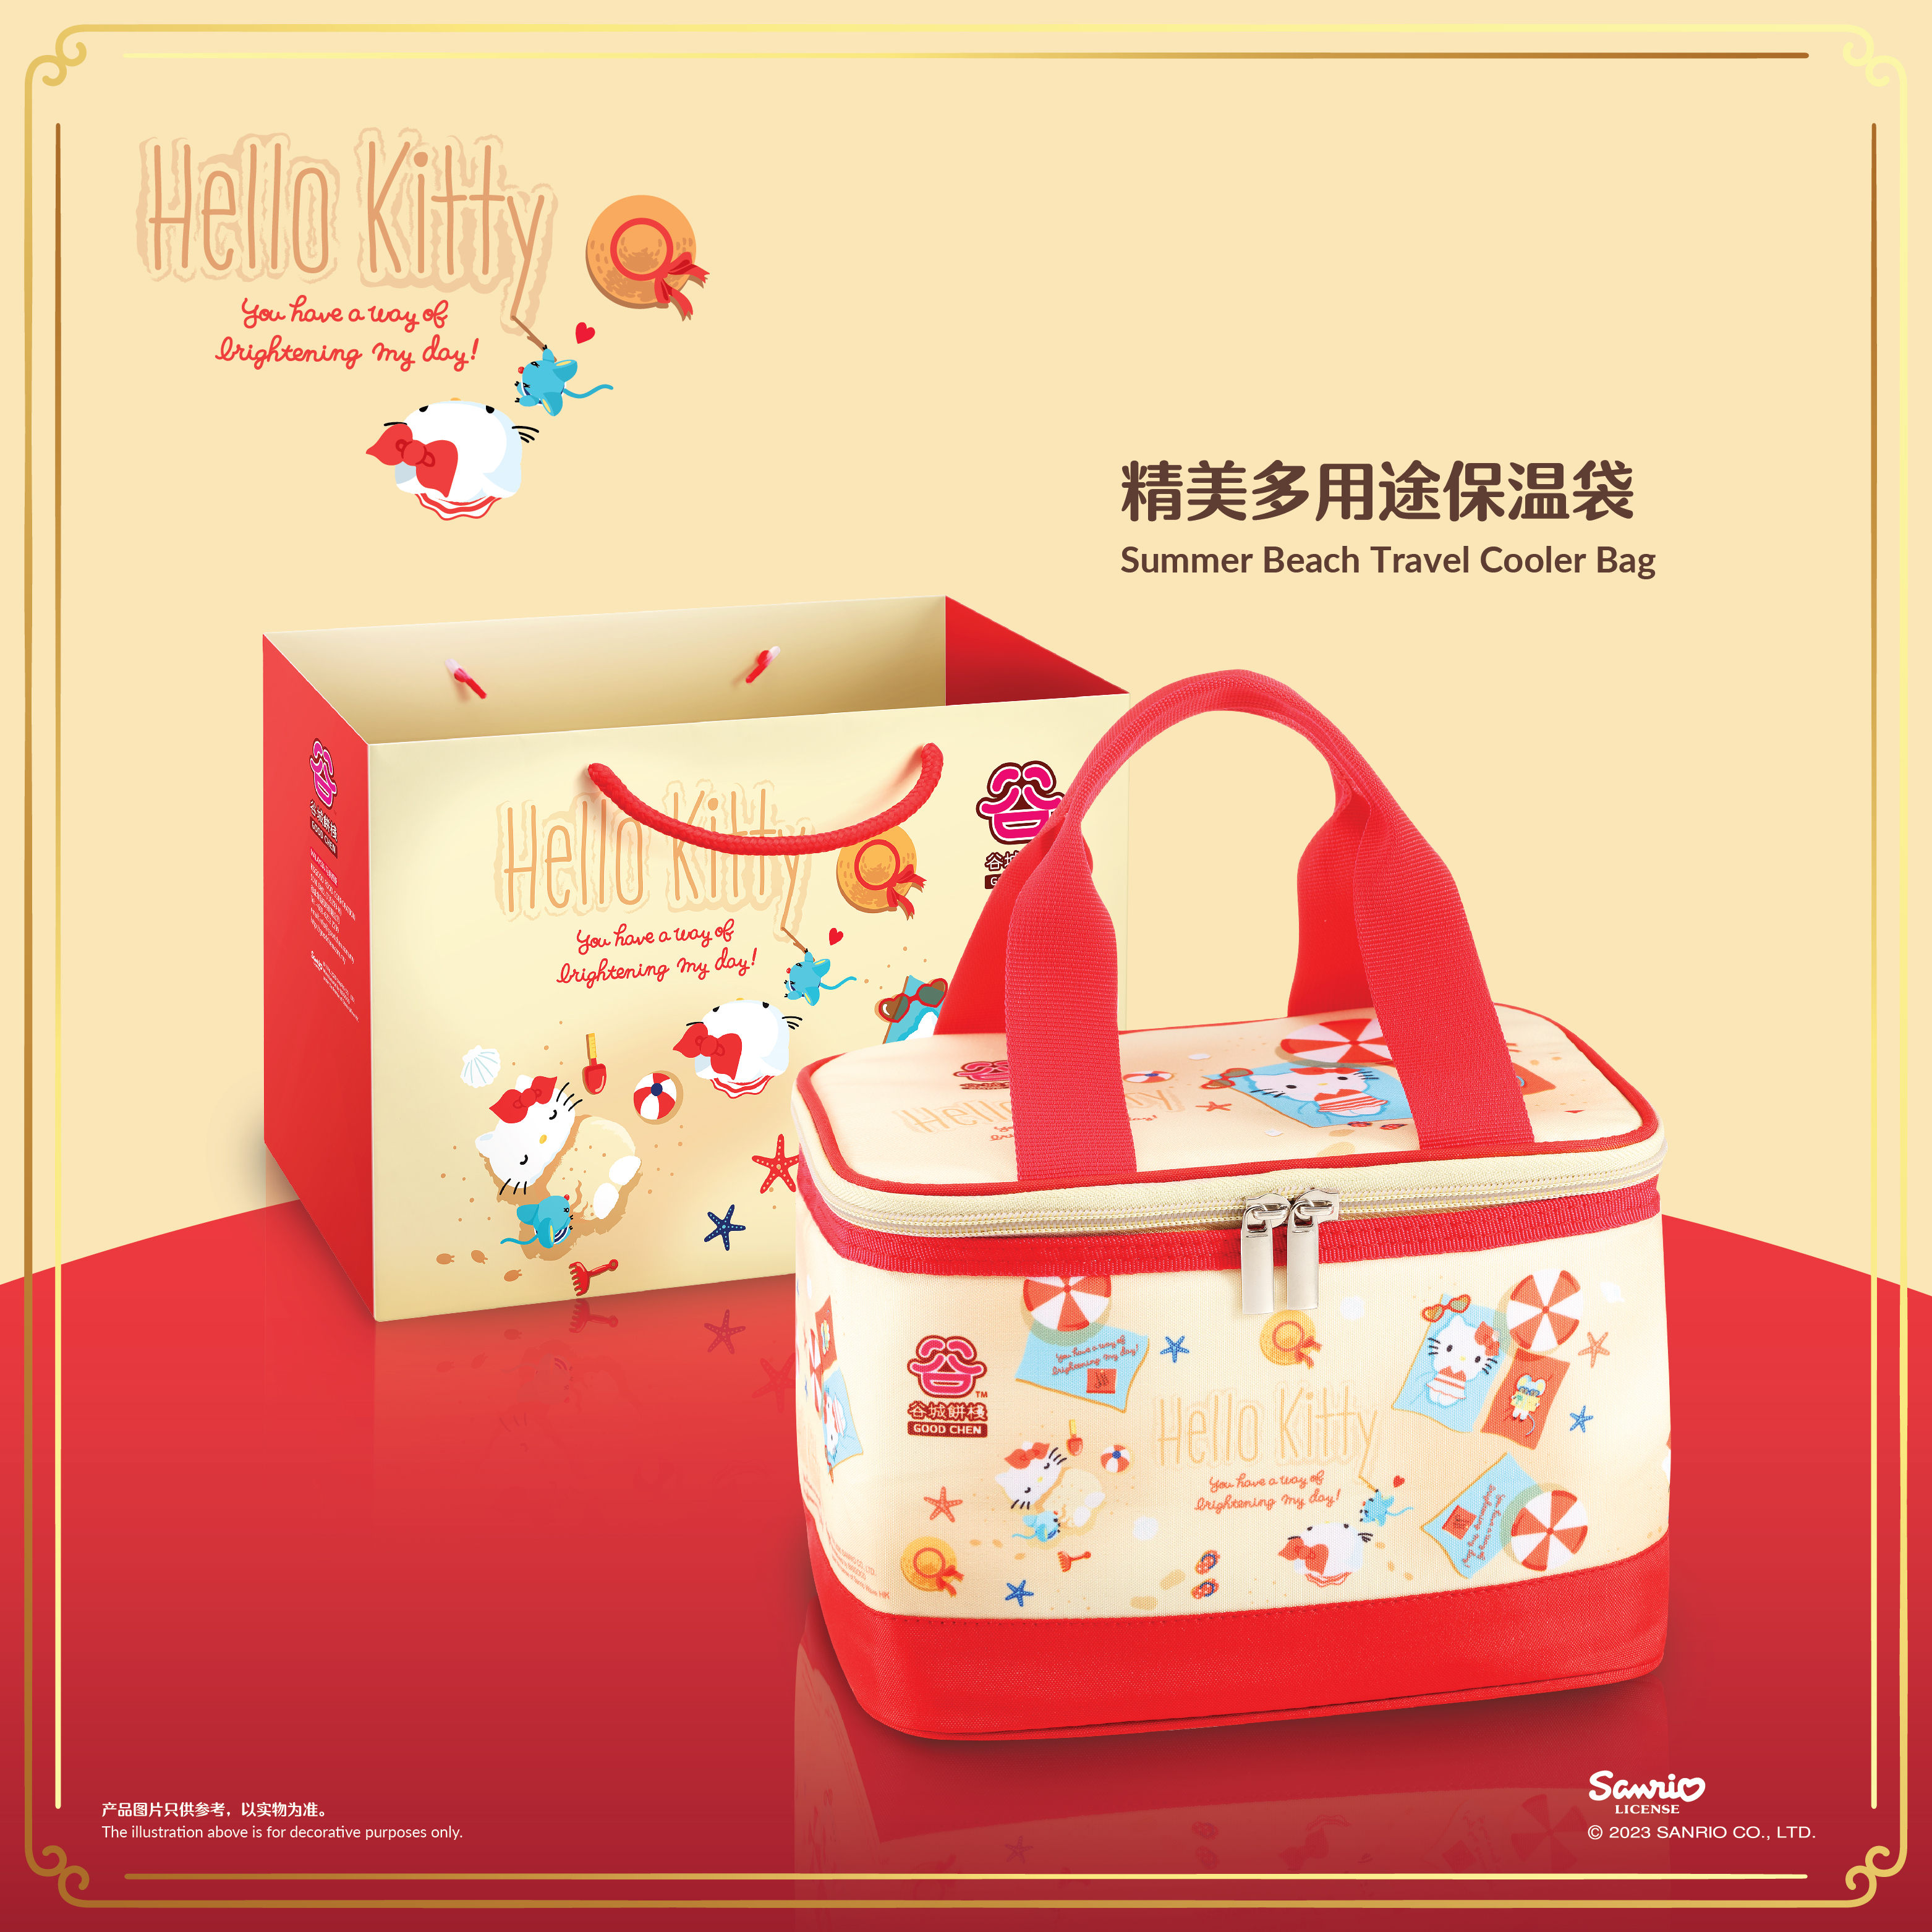 Hello Kitty Summer Beach Travel Cooler Bag (Baked Skin Mooncake)